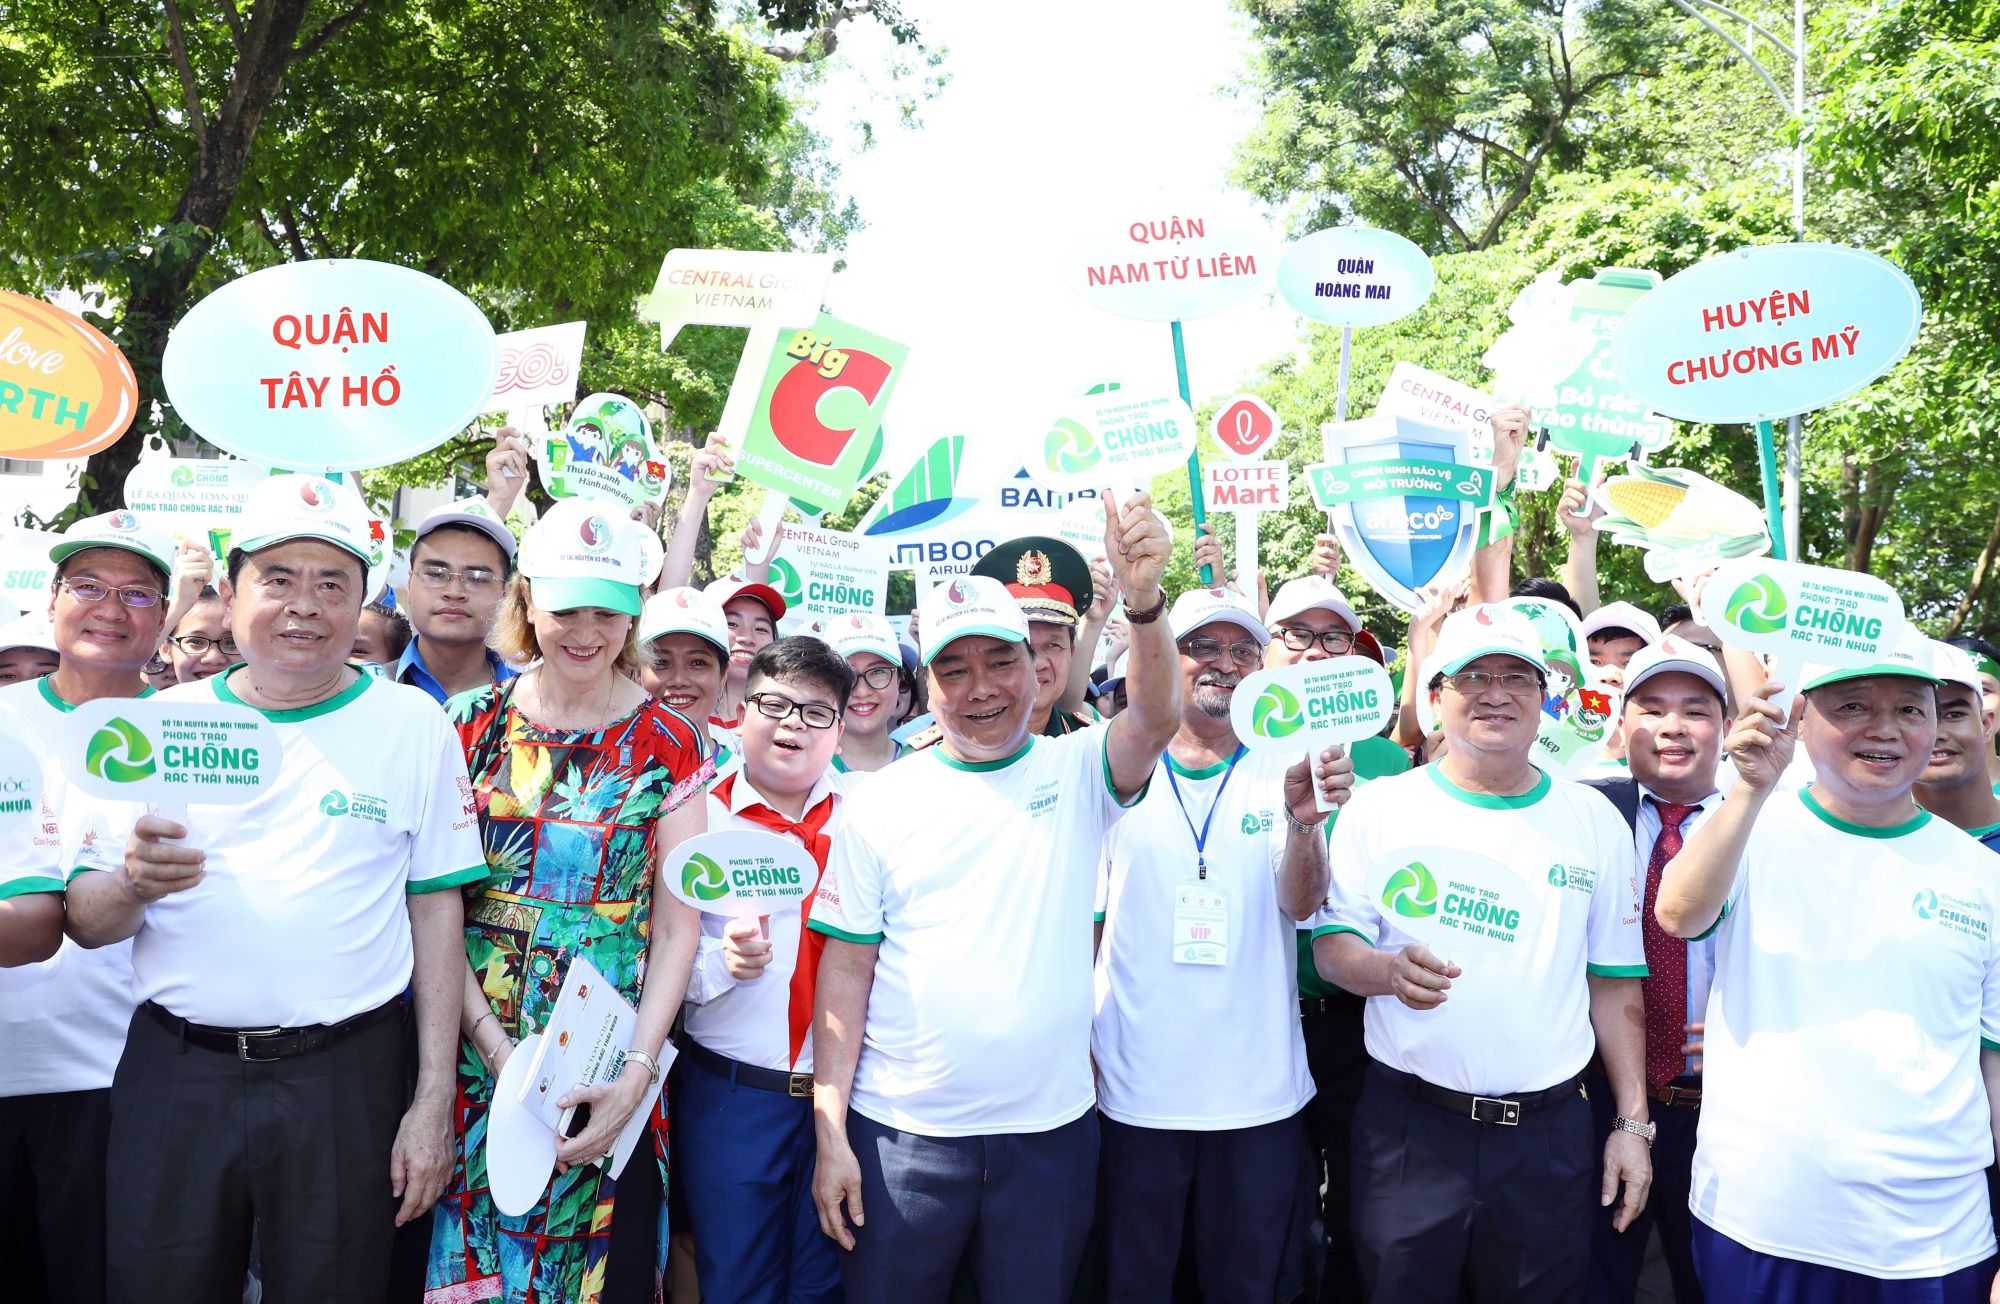 政府总理阮春福参加步行活动呼吁全社会携手防止塑料垃圾污染。越通社记者统一 摄